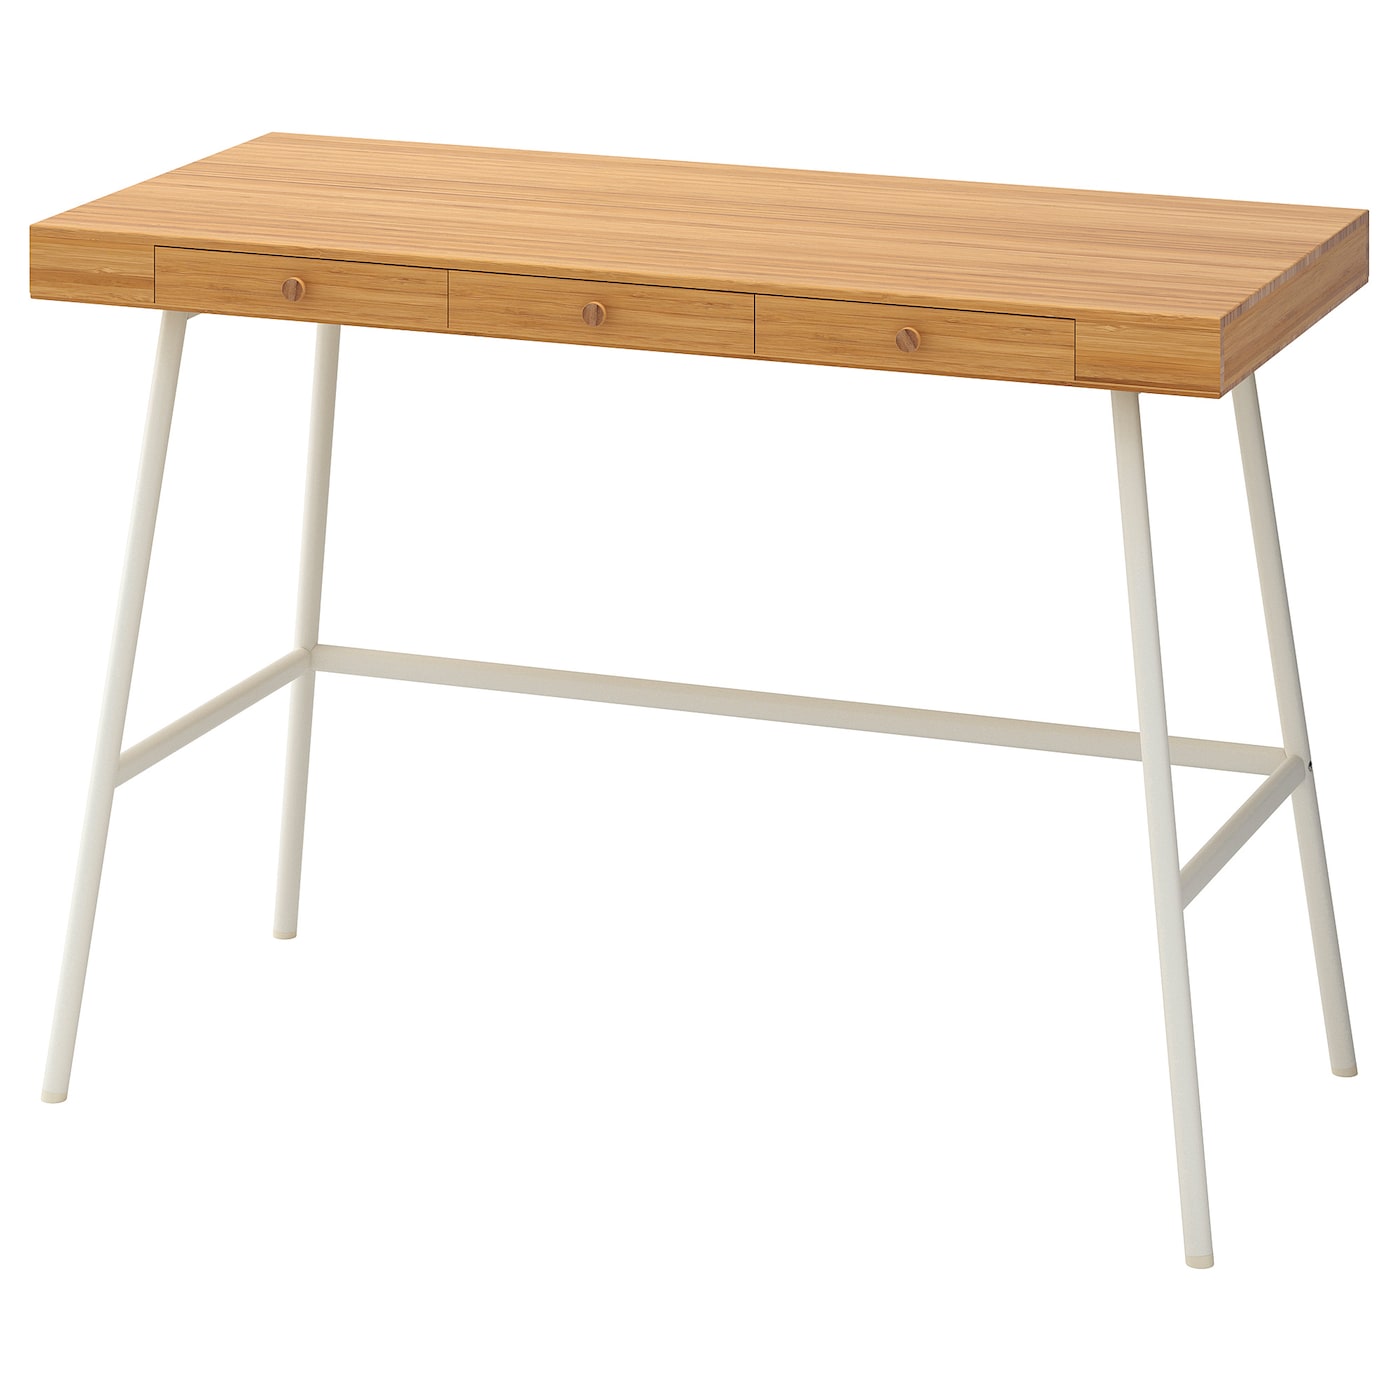 Письменный стол с ящиками - IKEA LILLÅSEN/LILLASEN, 102х49 см, бамбук, ЛИЛЛОСЕН ИКЕА